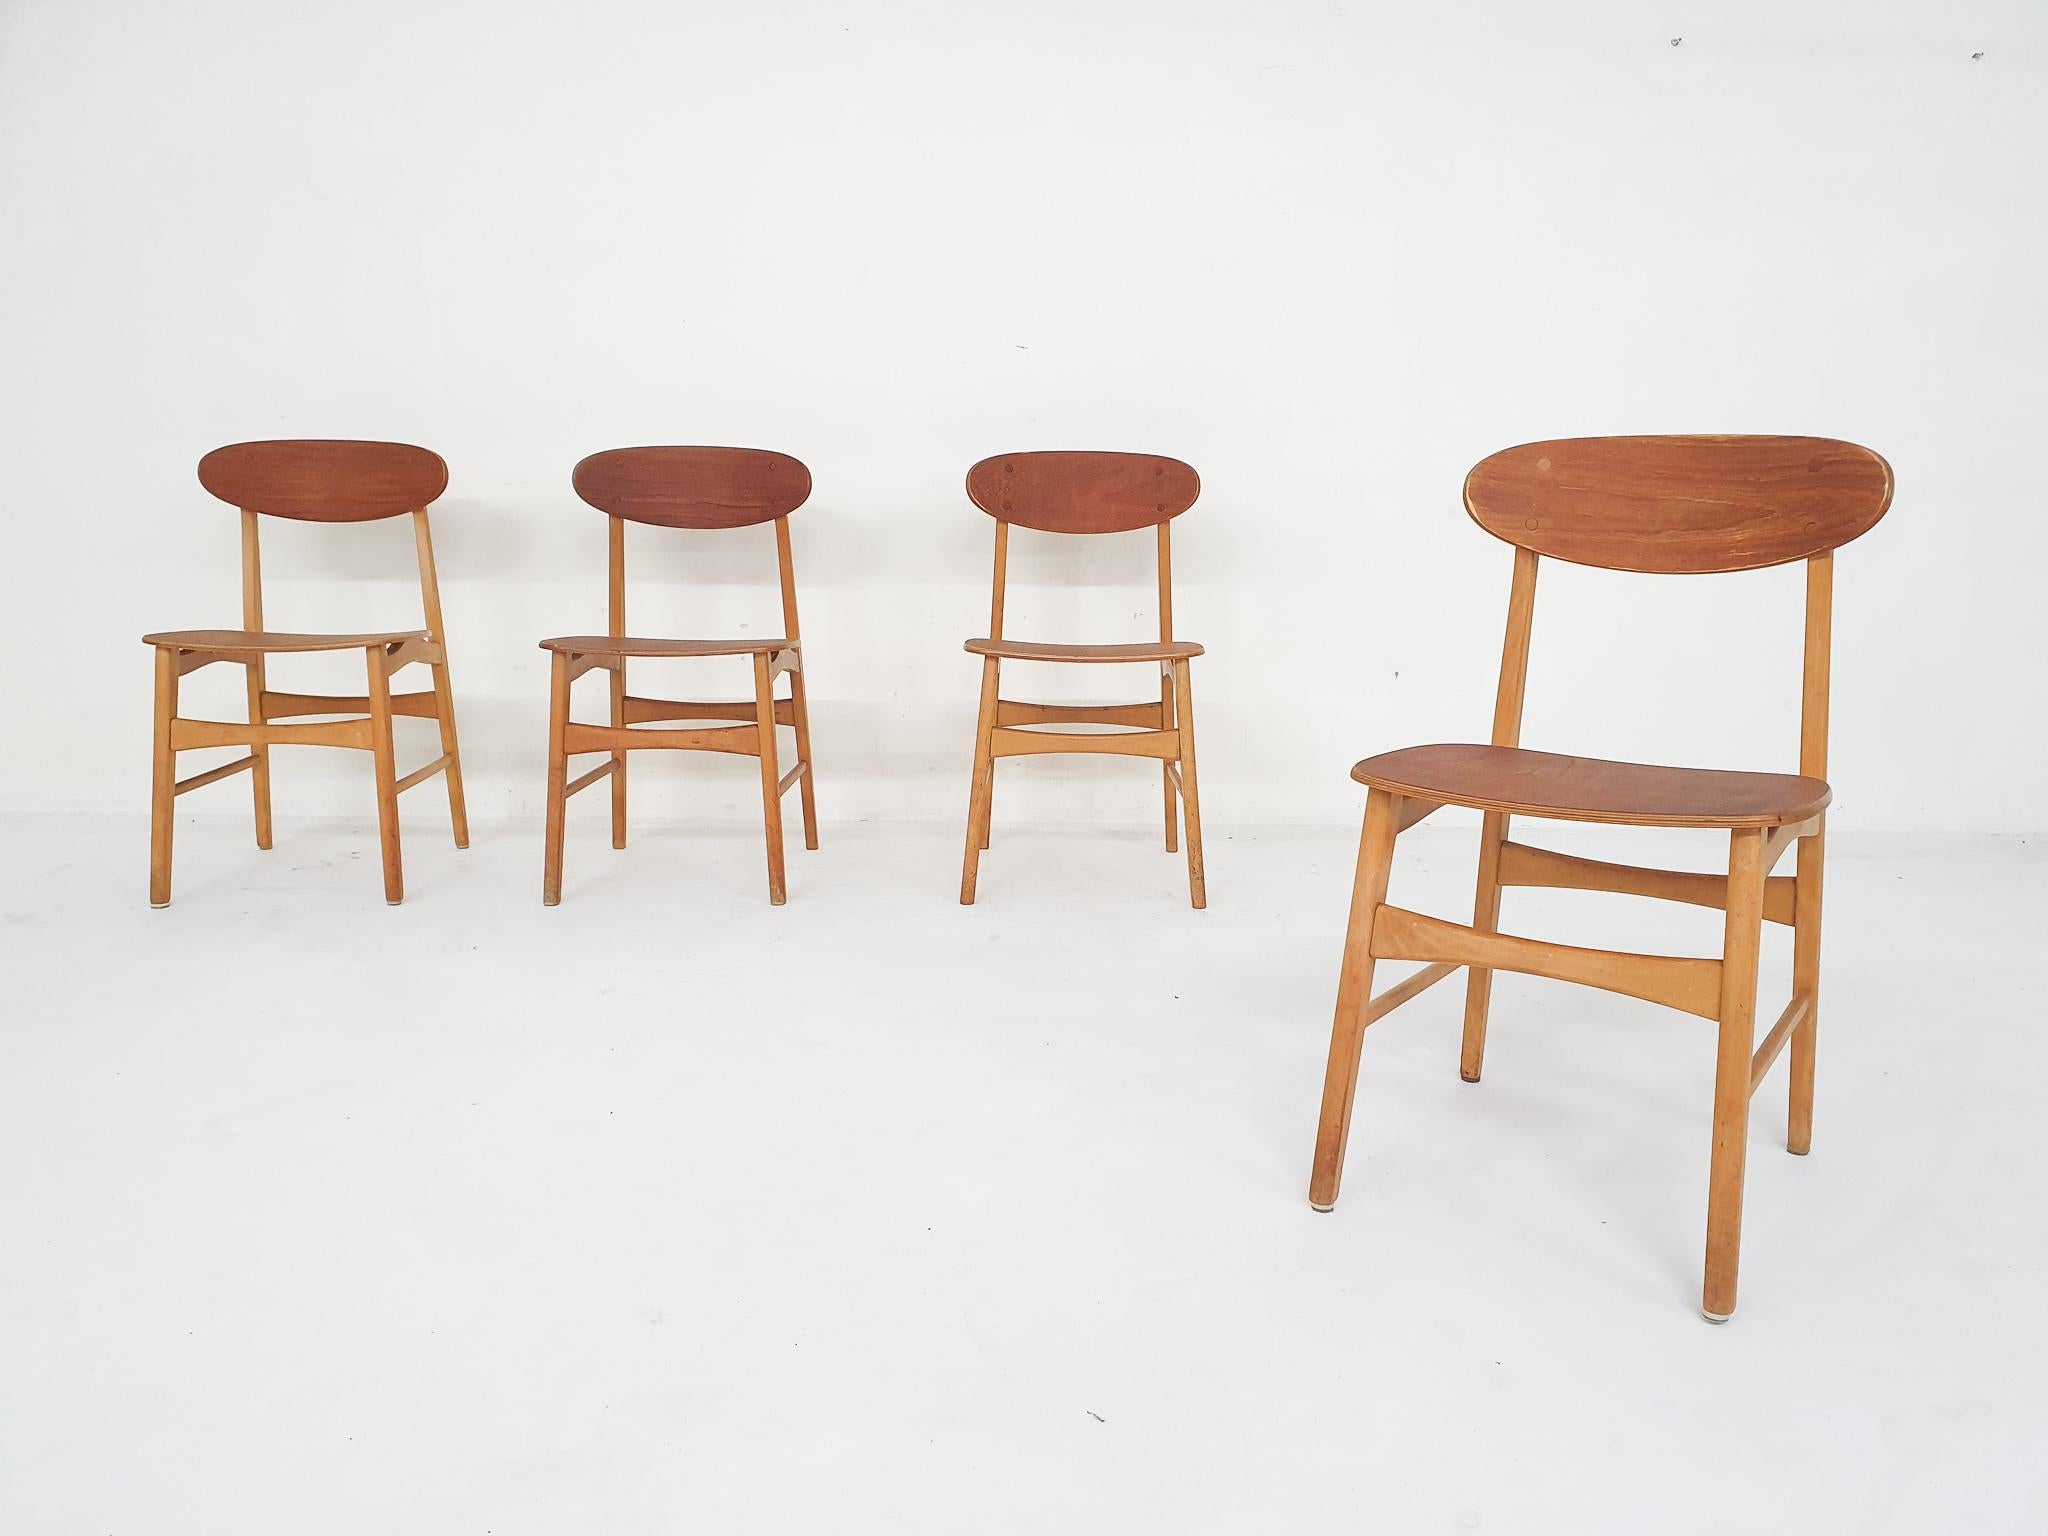 Vier Esszimmerstühle aus Teakholz im Stil von Borge Mogensen oder Pastoe.
Wir haben die Sitzfläche und die Rückenlehne neu lackiert und die Fugen überprüft und bei Bedarf ausgebessert.